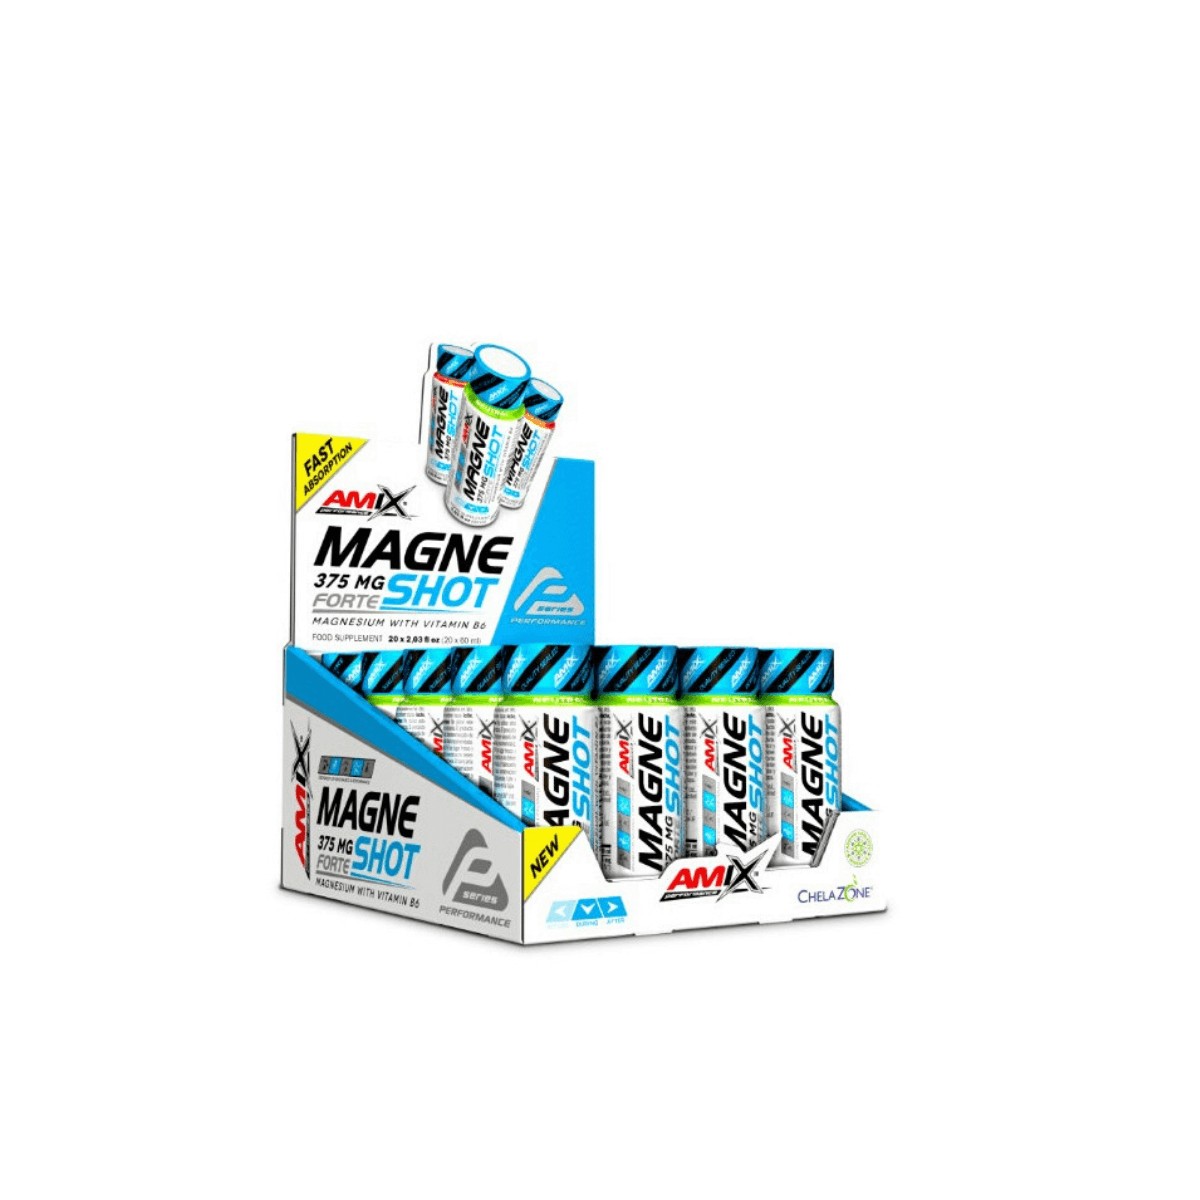 das neue günstig Kaufen-AMIX MagneShot Forte Mango 375 MG 20x60ML. AMIX MagneShot Forte Mango 375 MG 20x60ML <![CDATA[AMIX MagneShot Forte Mango 375 MG 20x60ML AMIX Performance MagneShot Forte 375 mg ist ein neues Produkt AMIX PERFORMANCE, ein ultrakonzentriertes Magnesium, das 